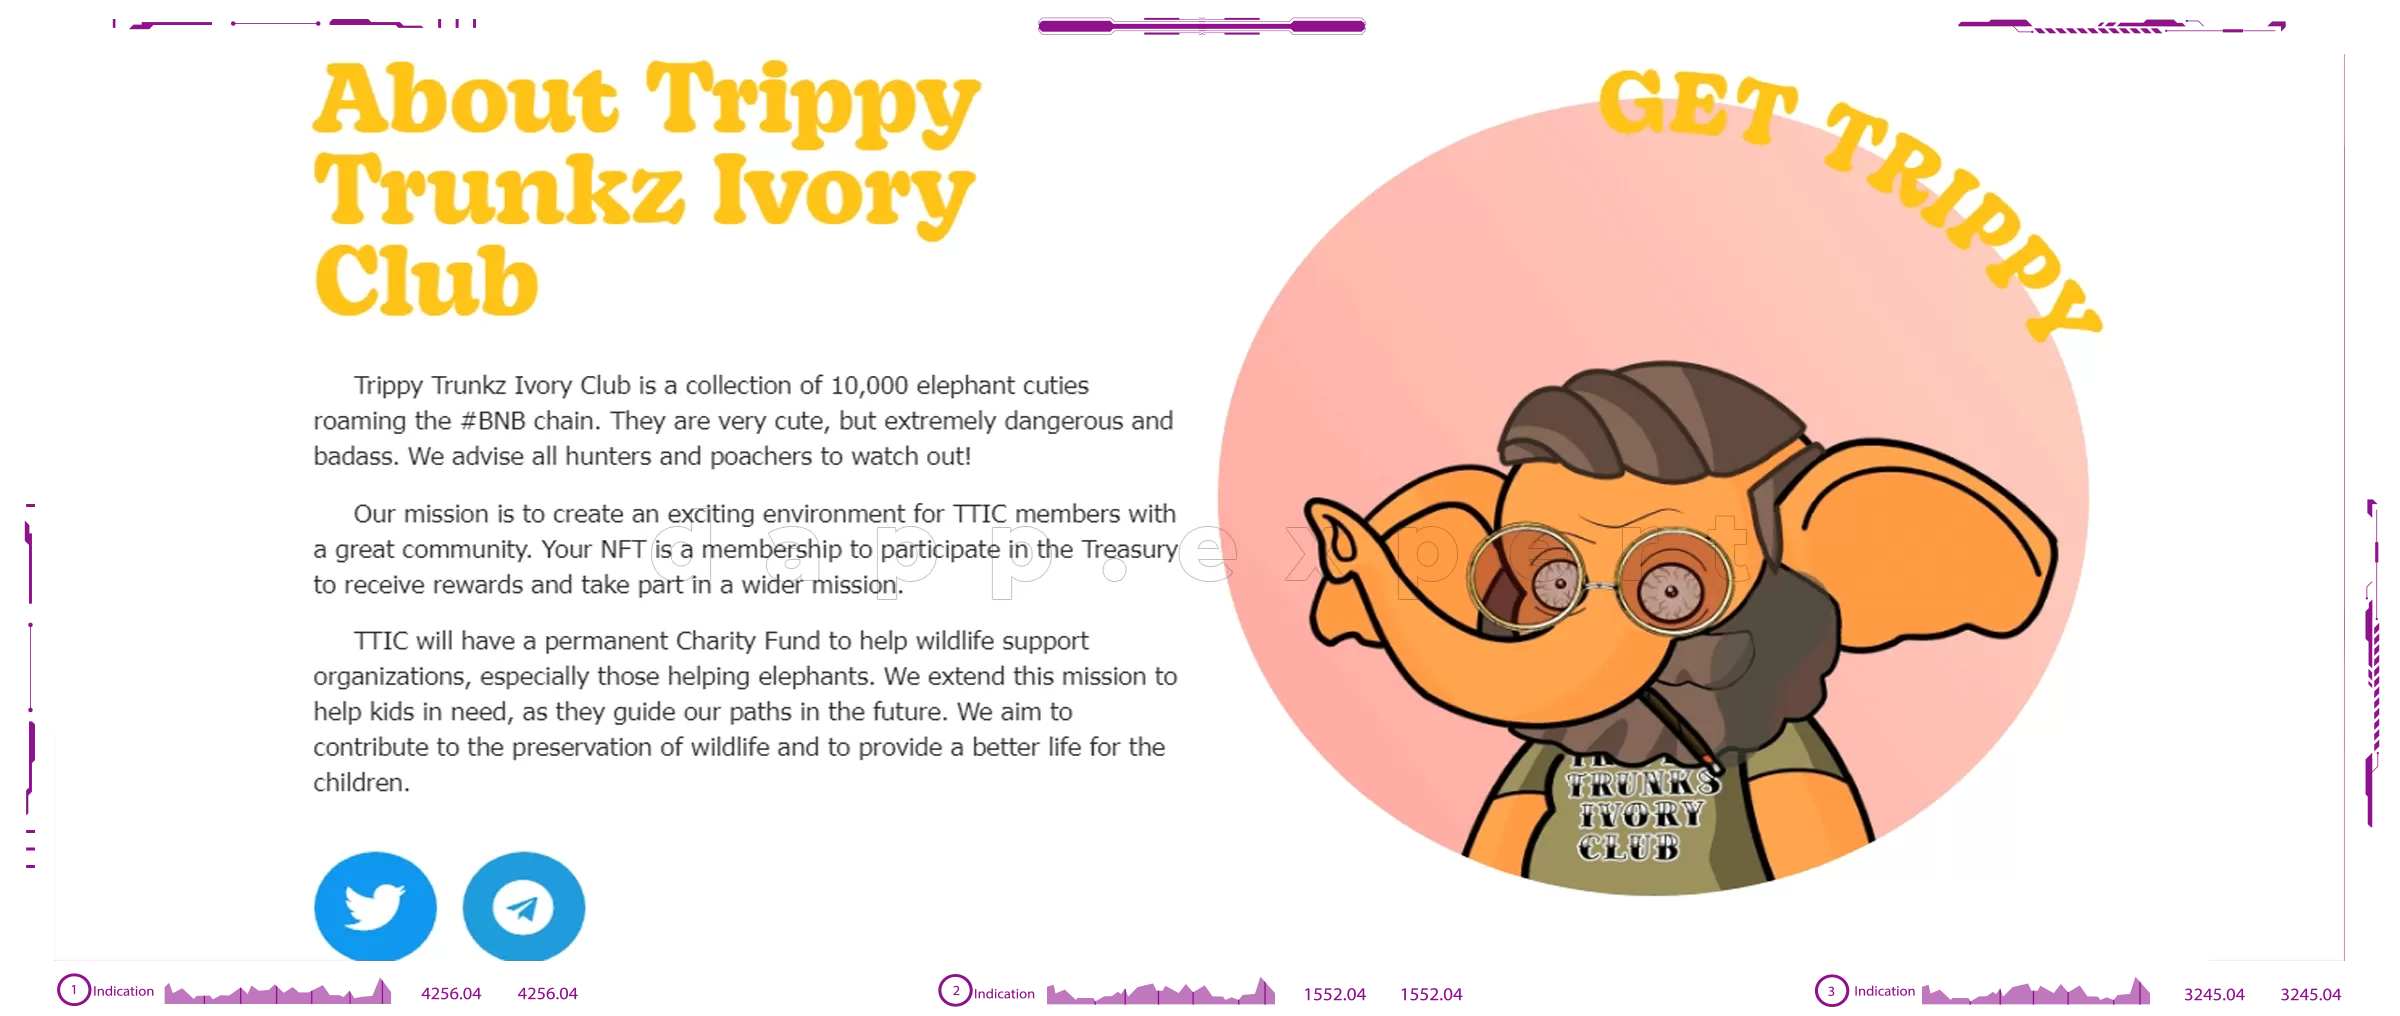 Dapp Trippy Trunkz Ivory Club